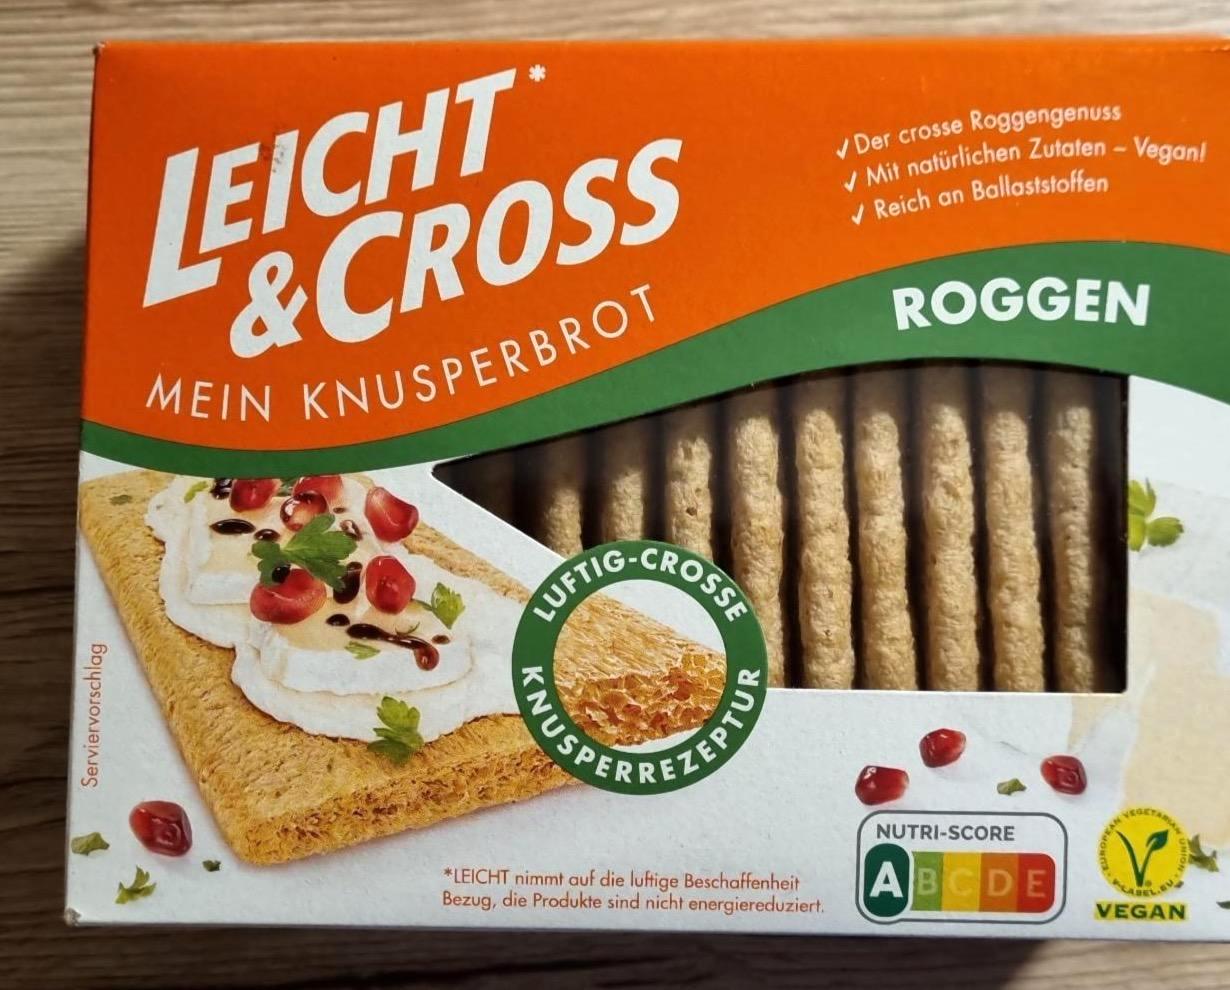 Képek - Knusperbrot Roggen Leicht & cross